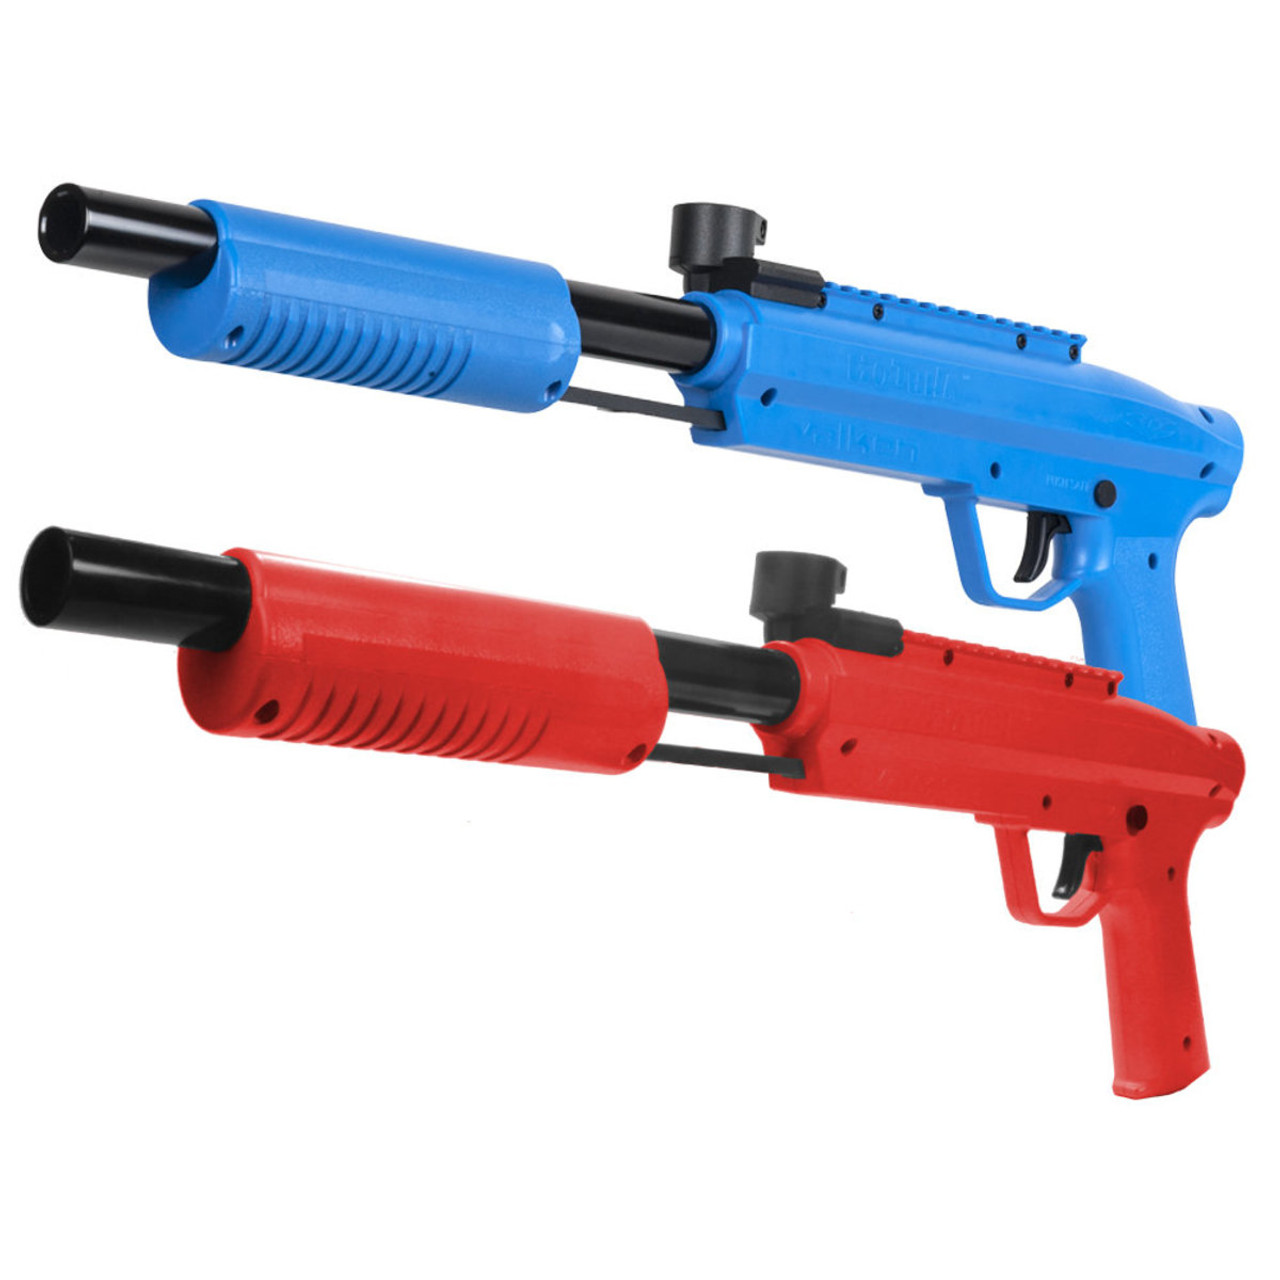 Safe Paintball Gun For Kids: Valken's Gotcha Paintball Gun